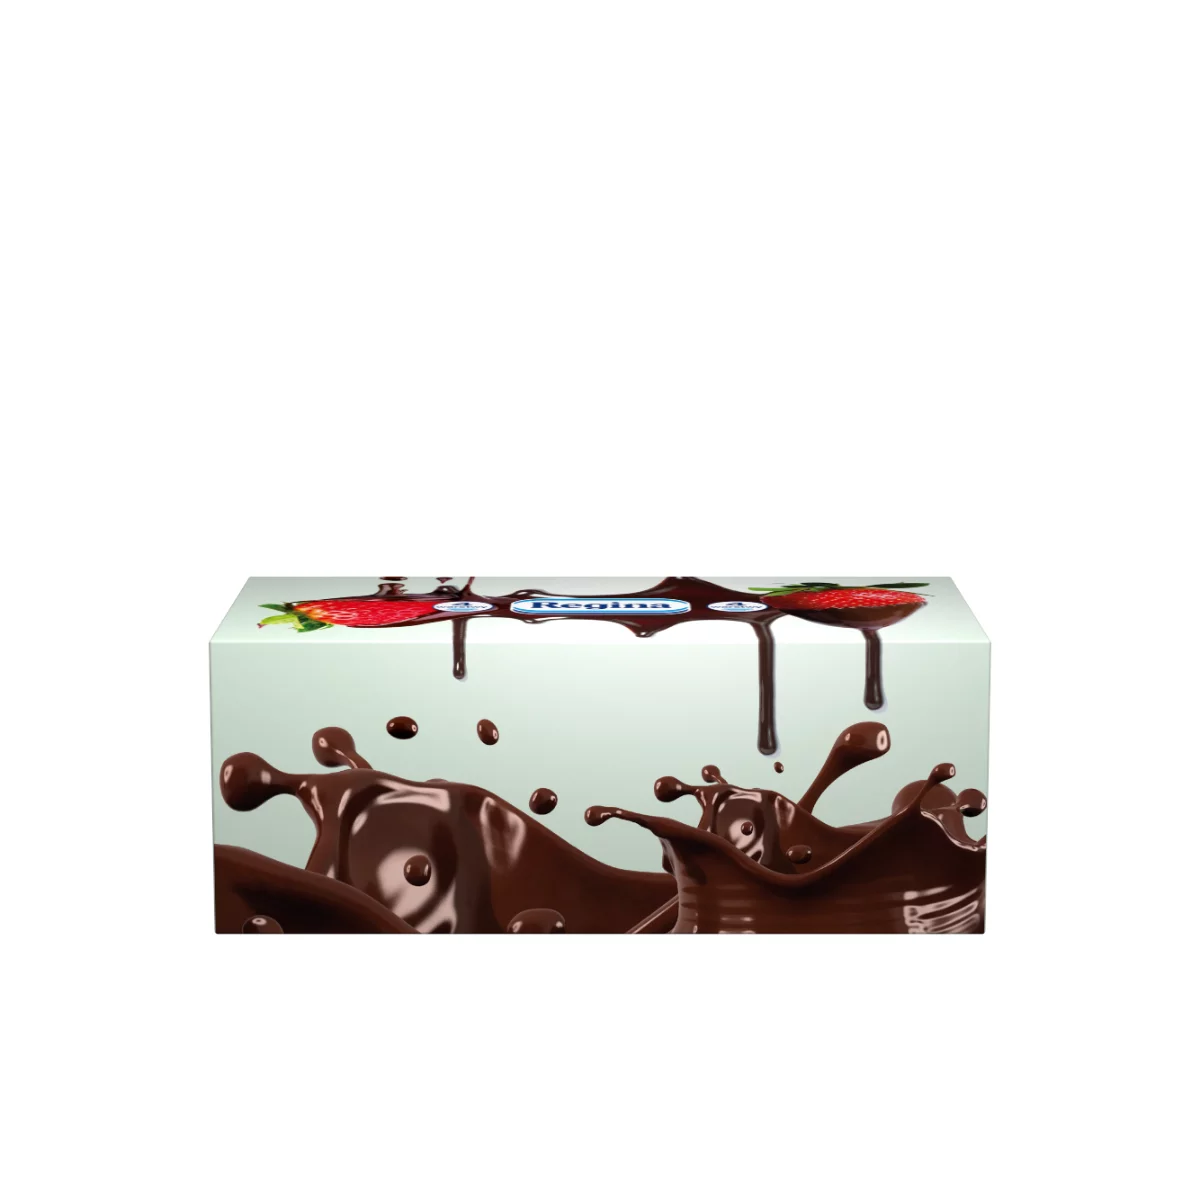 Regina papír zsebkendő 96 db 4 rétegű Splashwte - Csokoládé